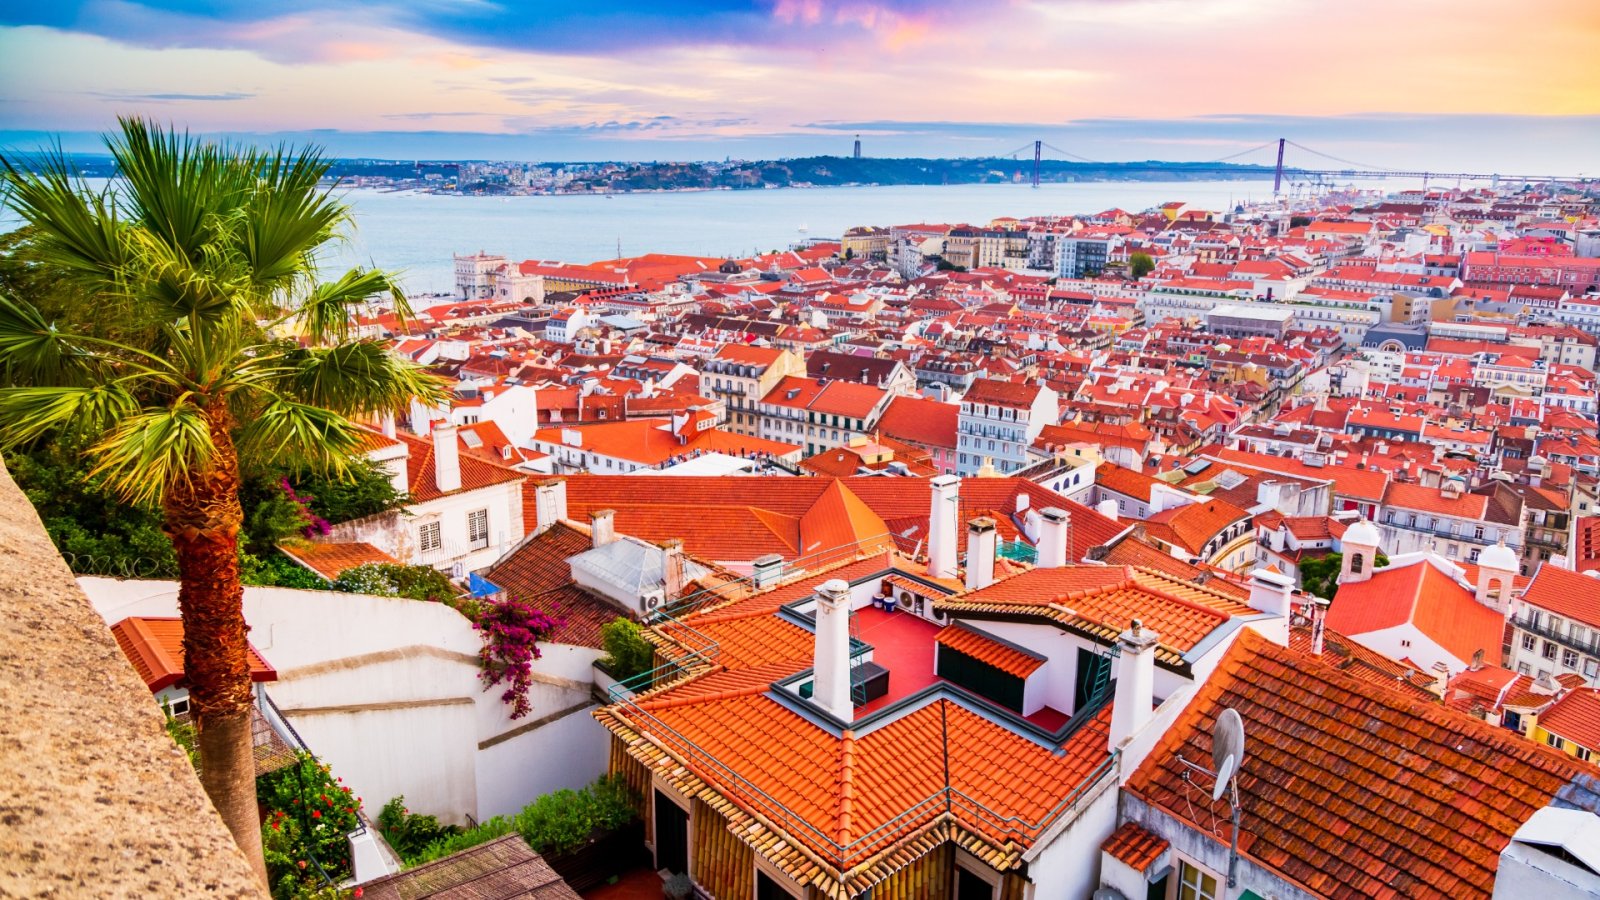 Lisboa: Europas skjulte perle av historie, sjarm og liv